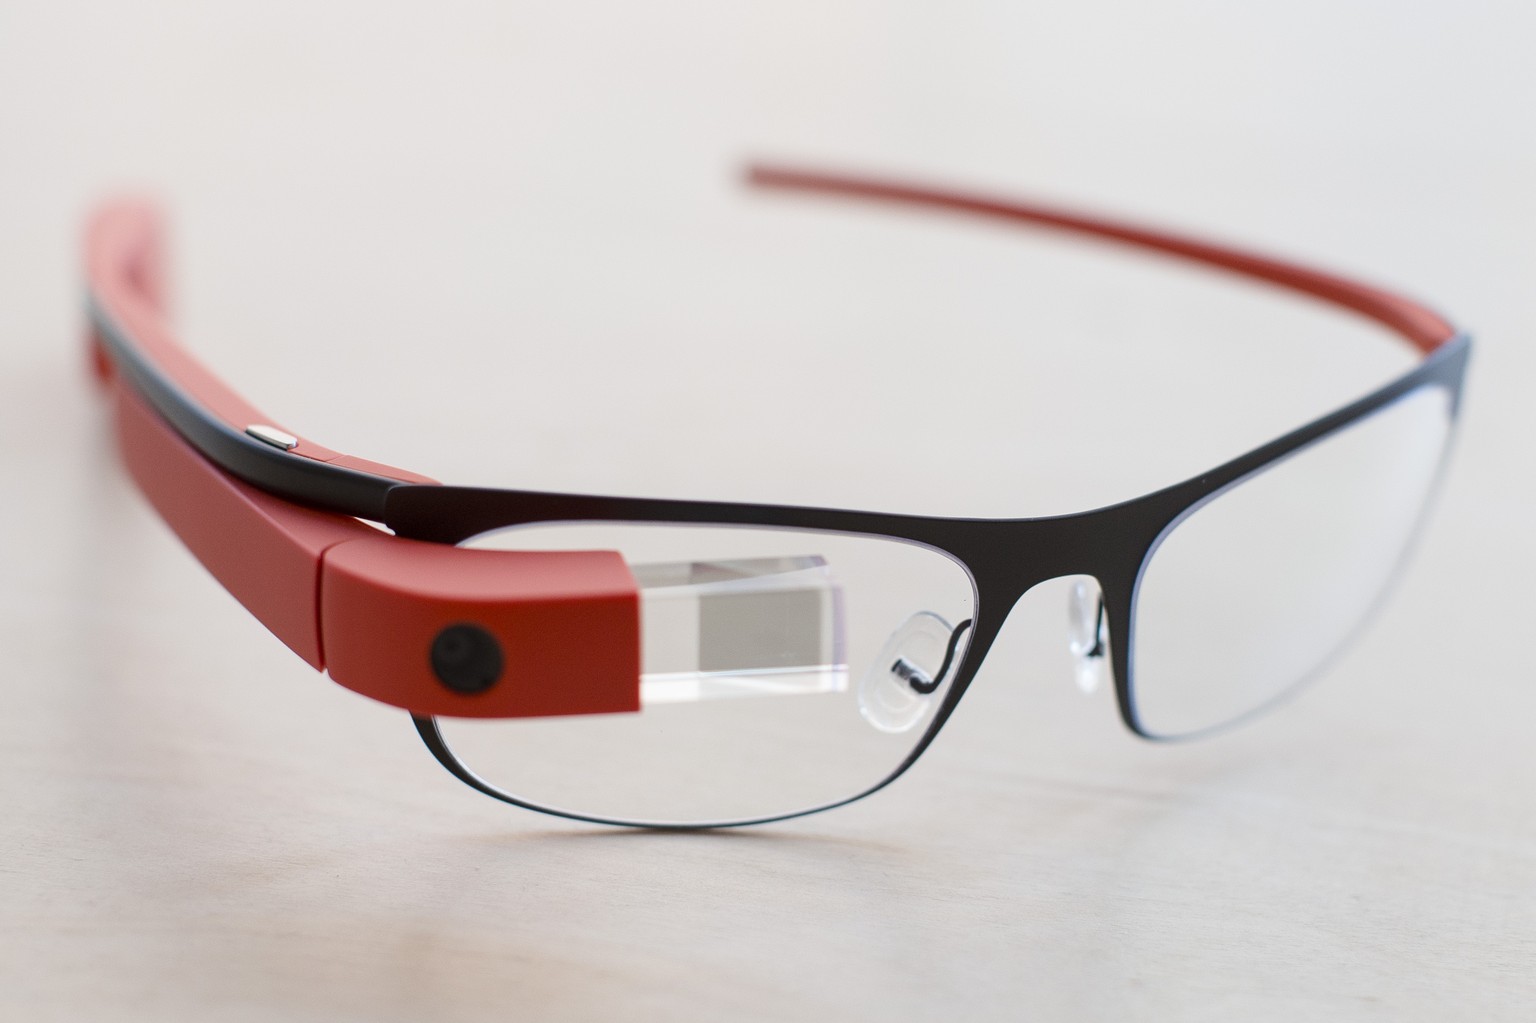 Die Google Glass gibt es mittlerweile auch mit korrigierten Gläsern.